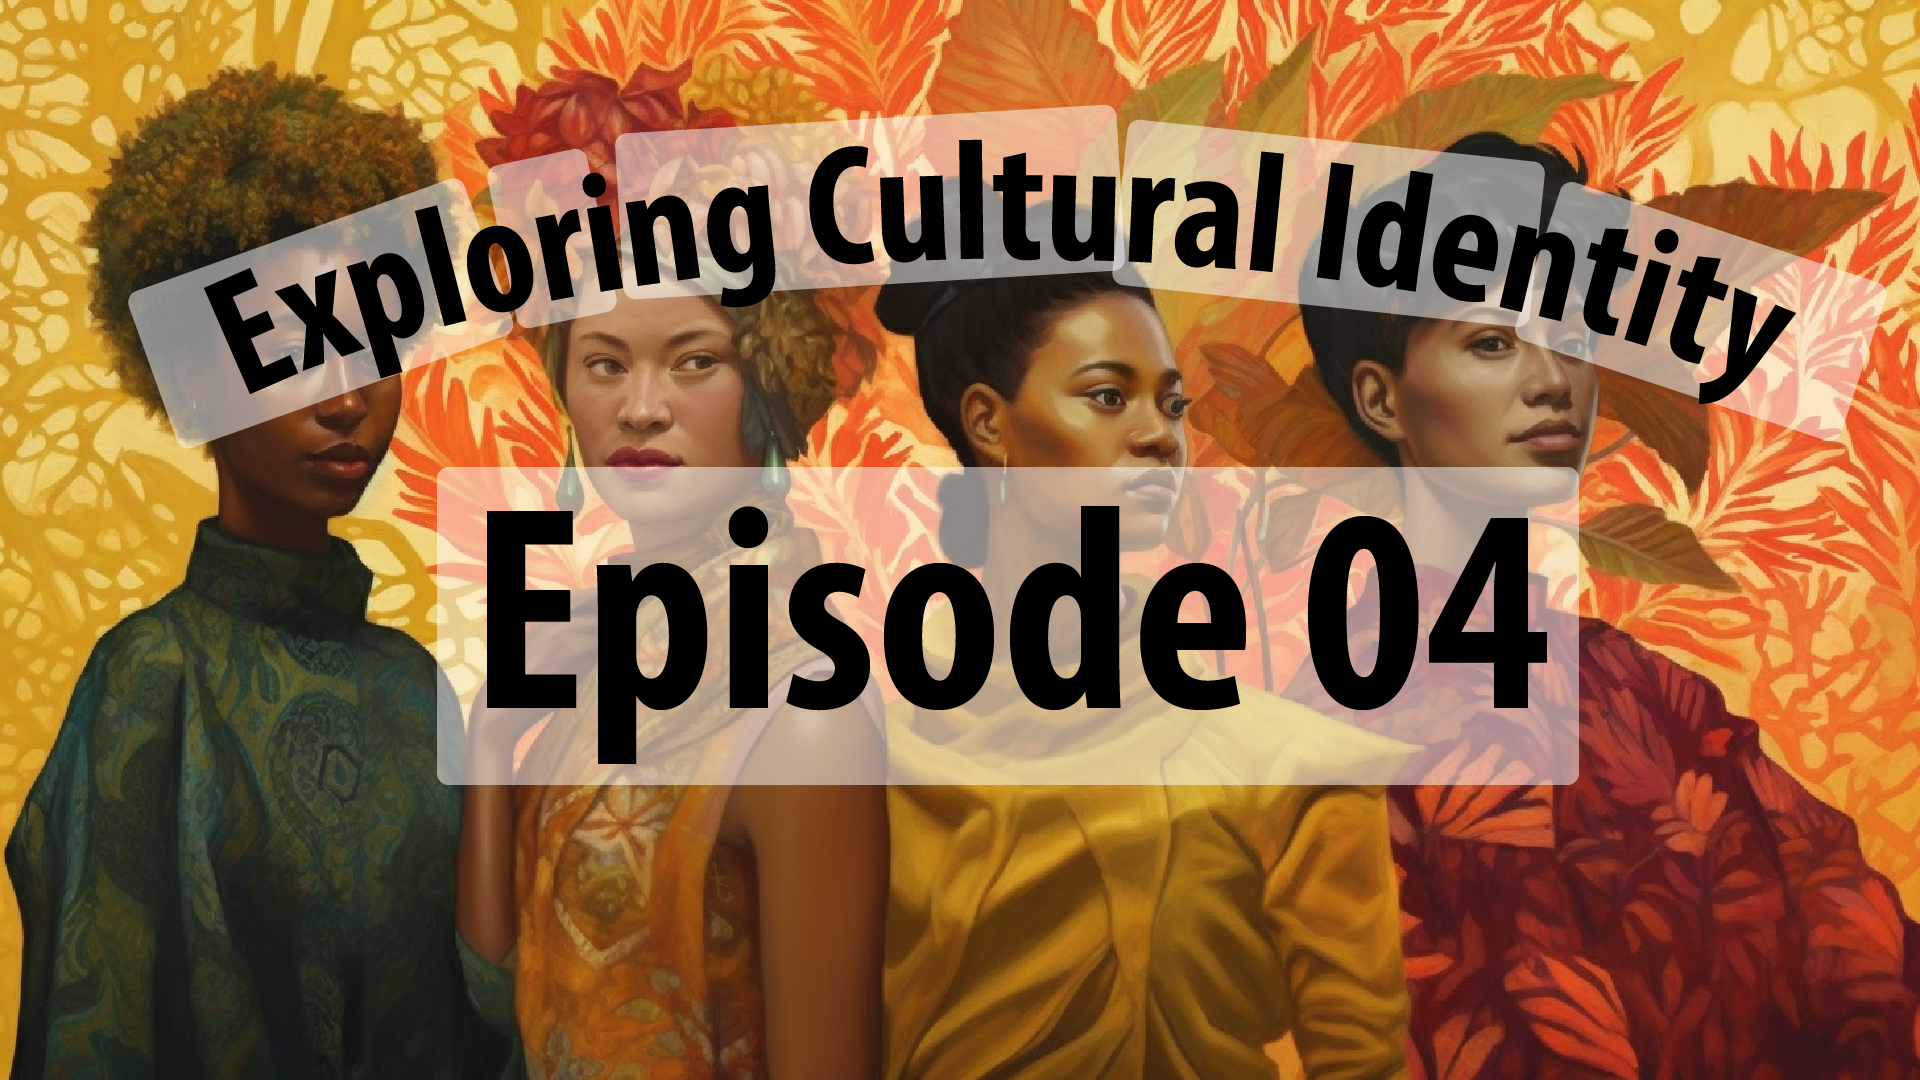 Exploring Cultural Identity